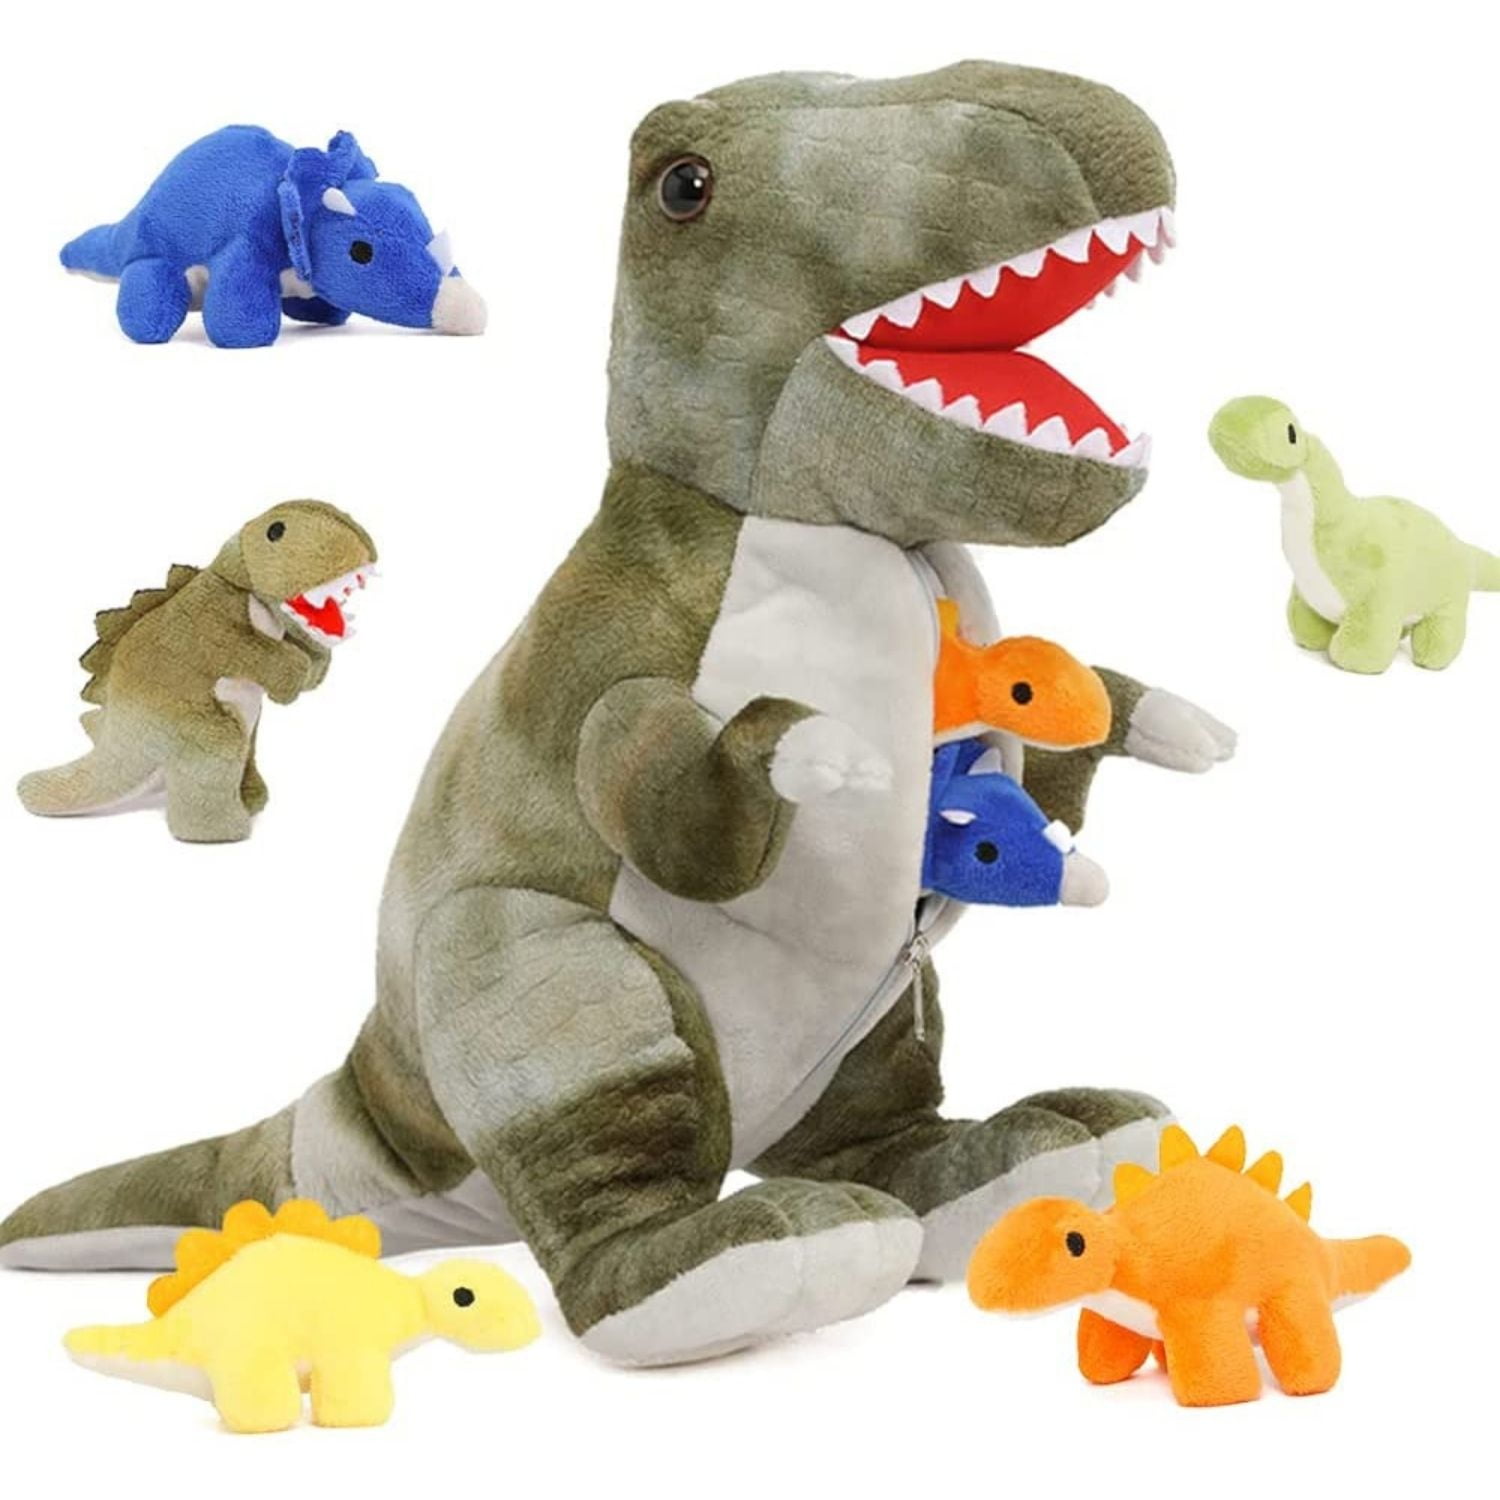 Xmas Giant Large Dinosaurs Rex Plush Toys Kids Soft Cuddly Stuffed Animal UK~HOT 